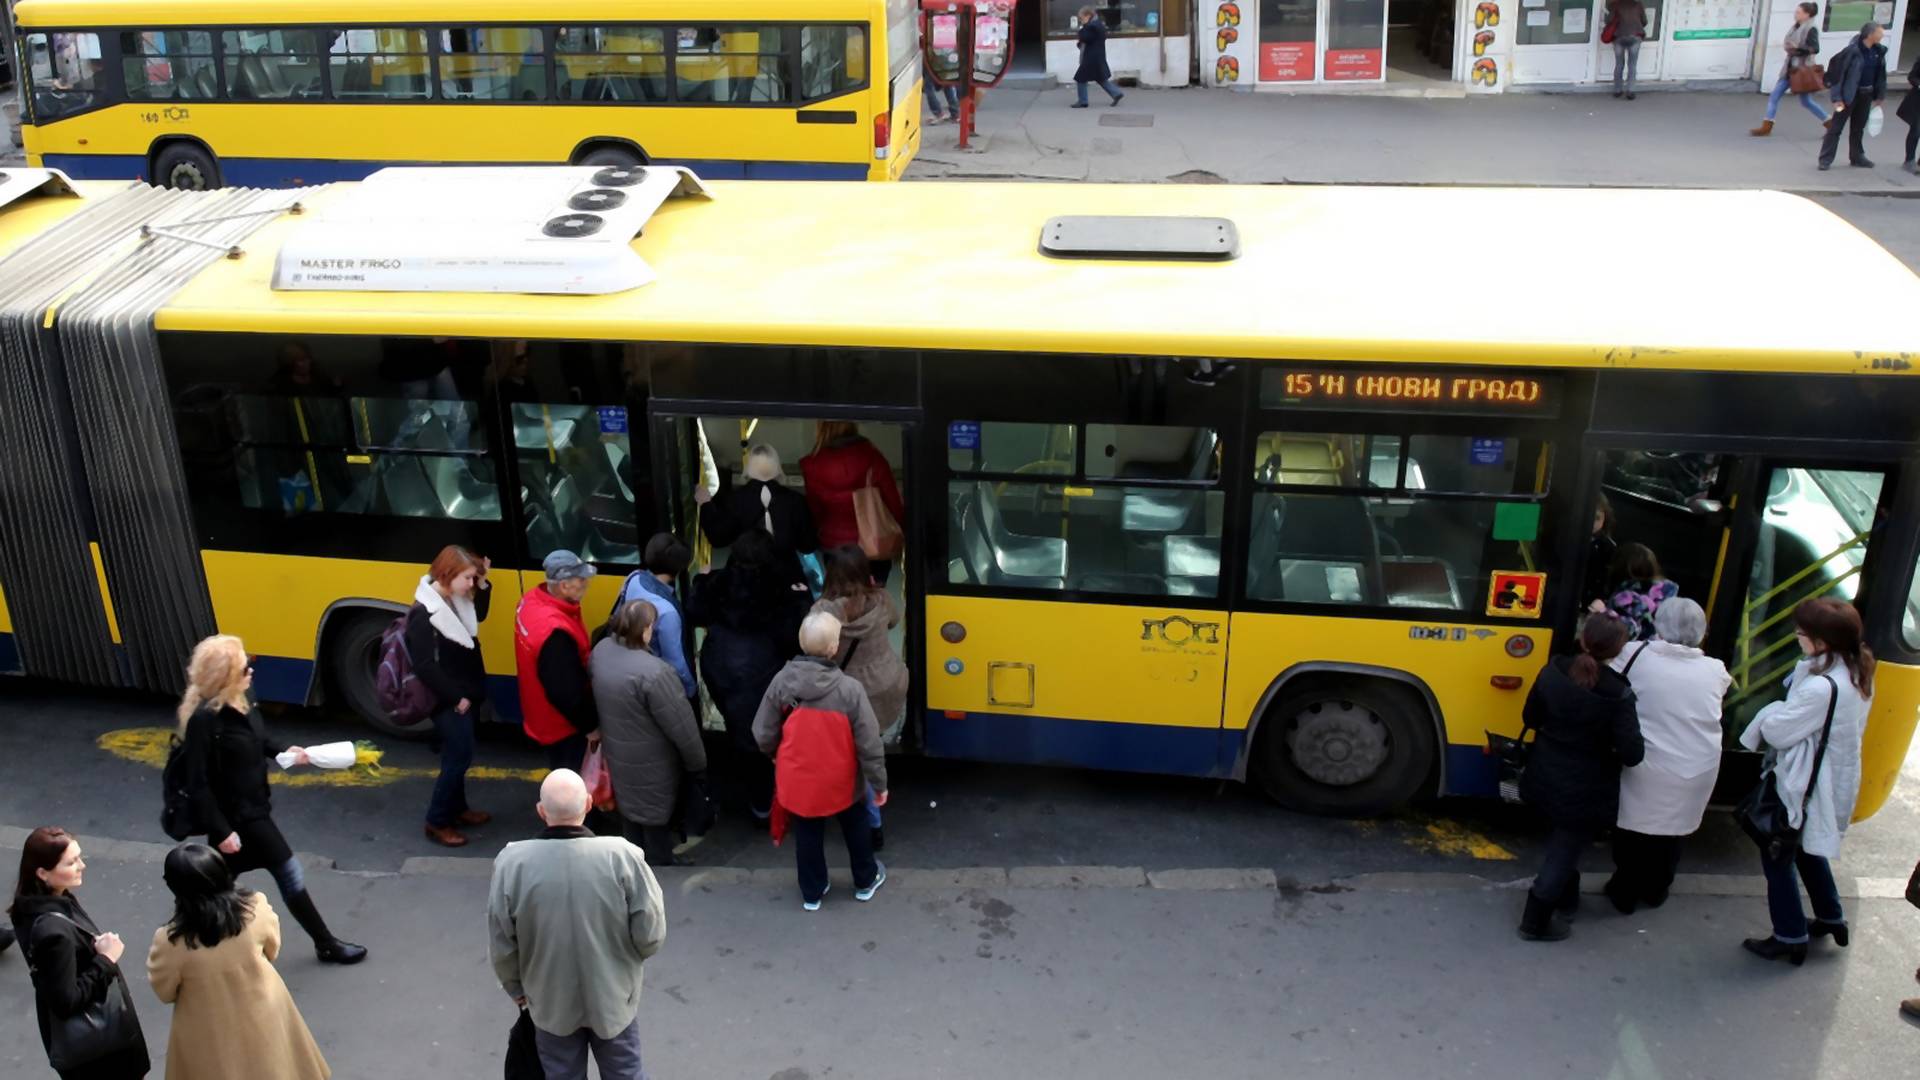 Nove mere u GSP: autobusi neće stajati na sve stanice i biće manje putnika - u prevodu nikome ništa nije jasno